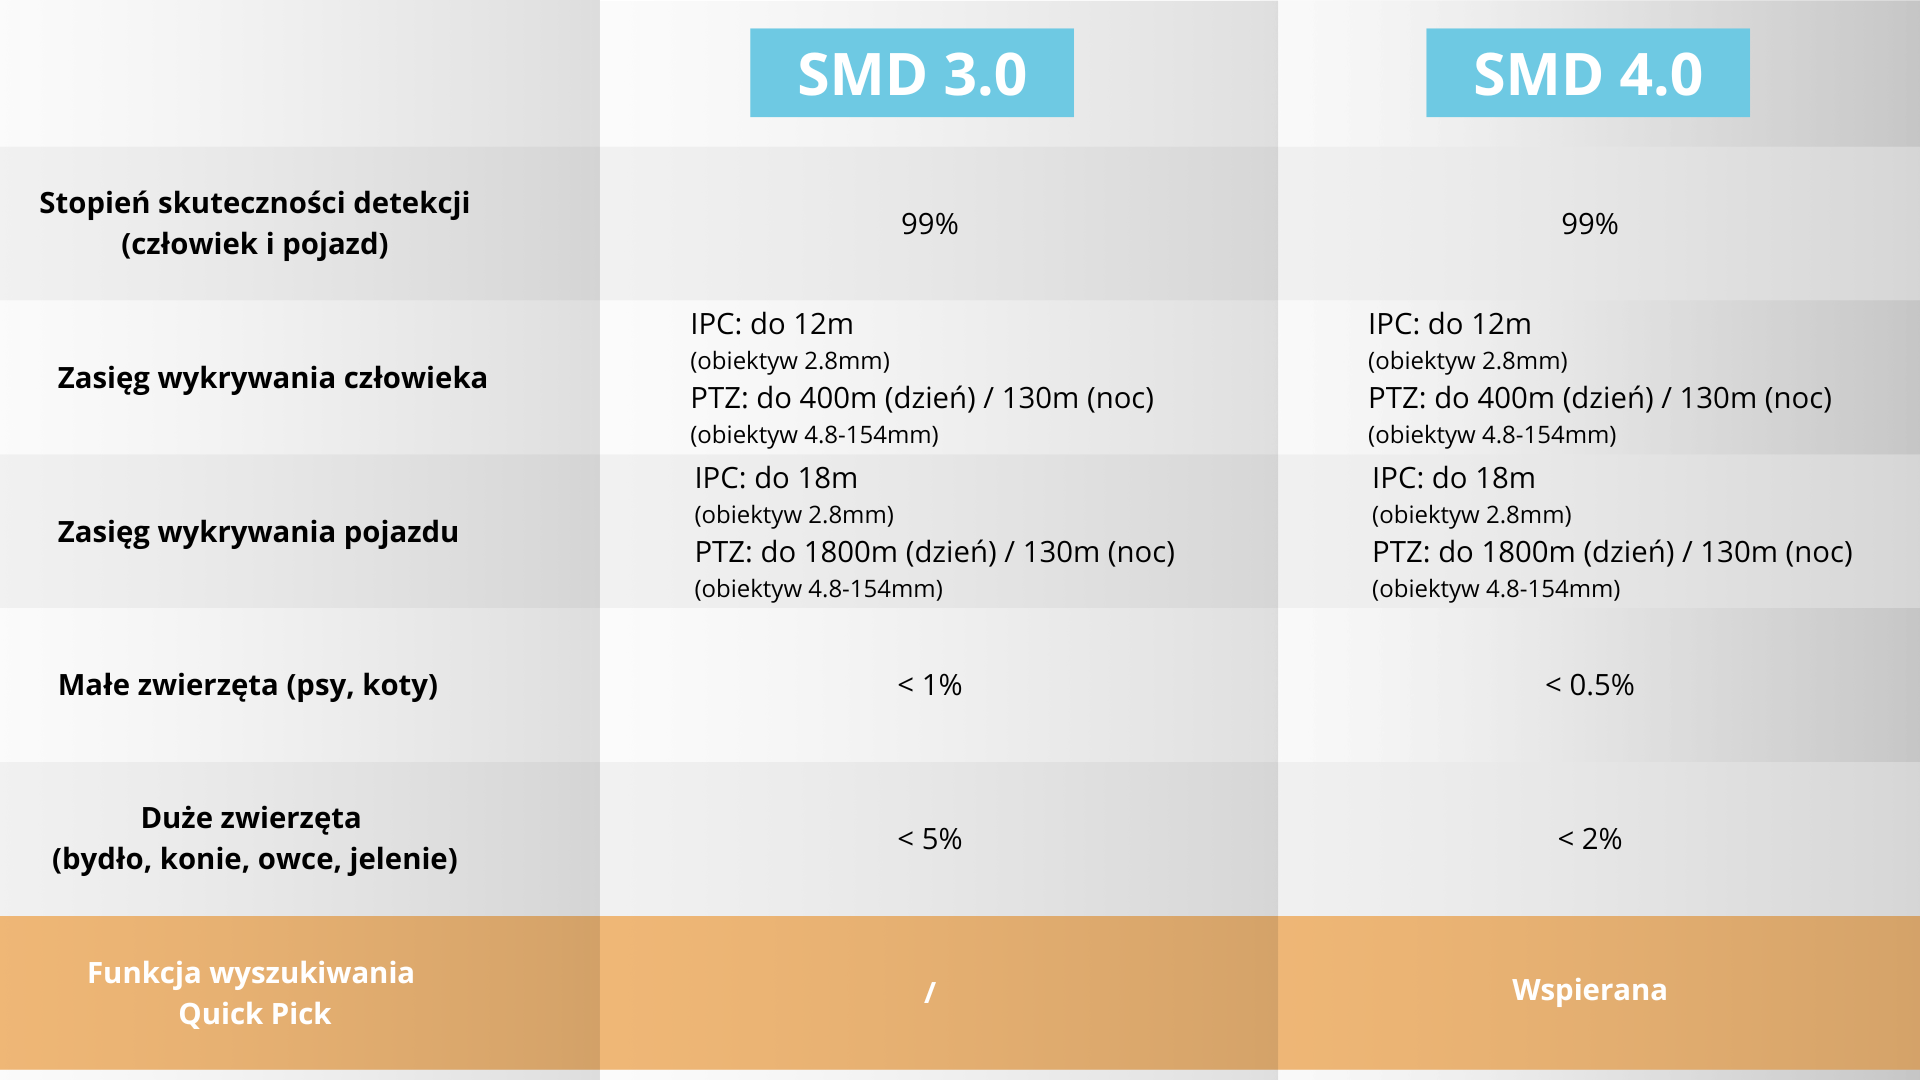 SMD 3.0 vs SMD 4.0